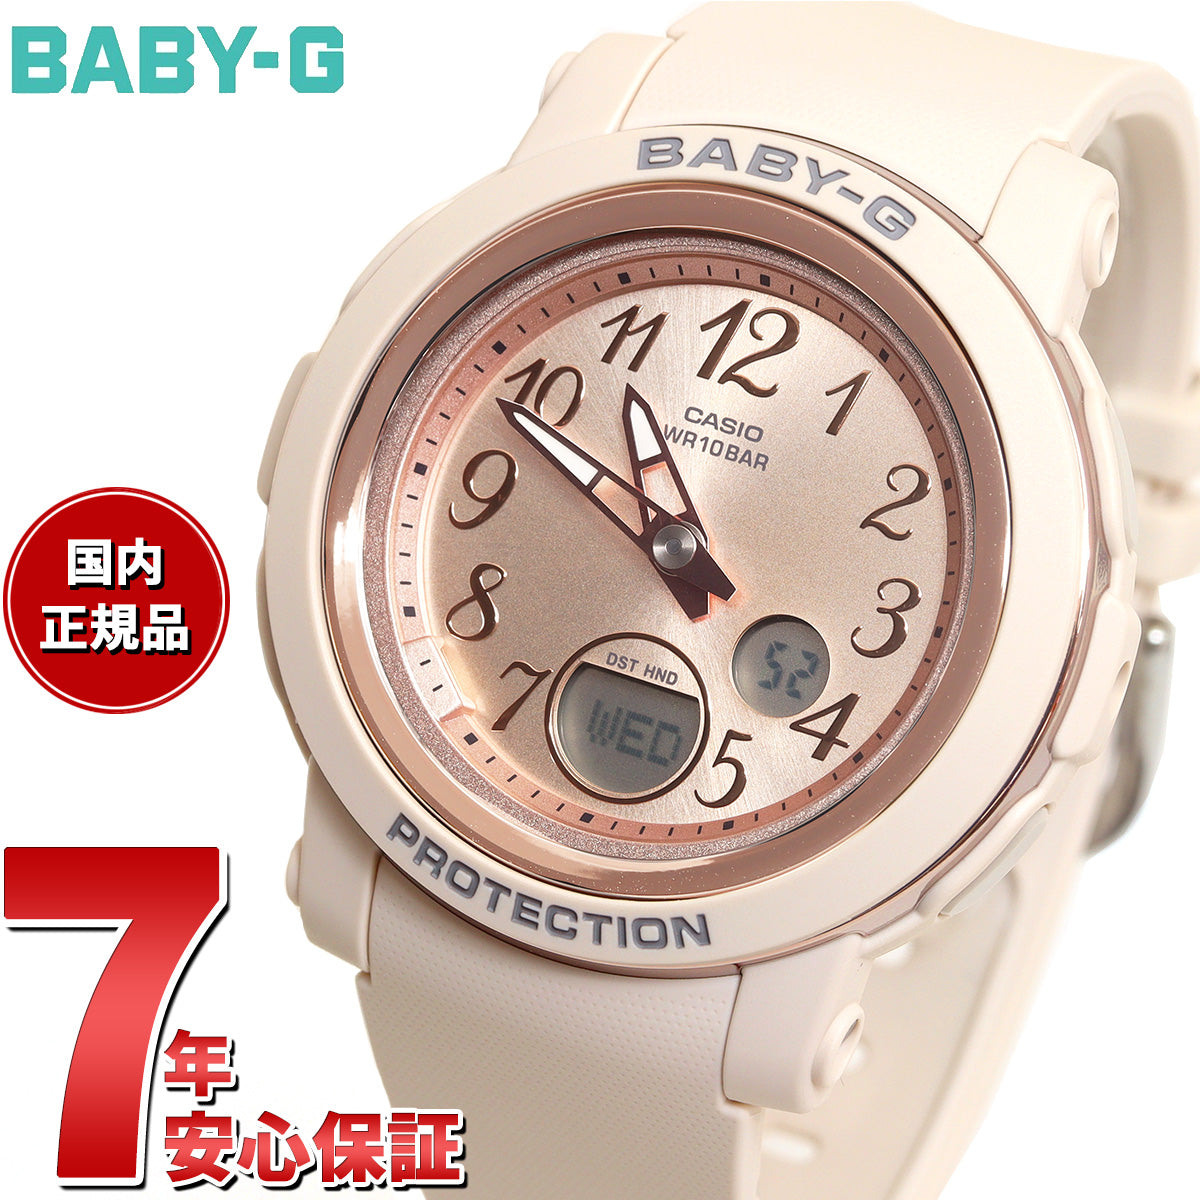 BABY-G カシオ ベビーG レディース 腕時計 BGA-290SA-4AJF ピンク